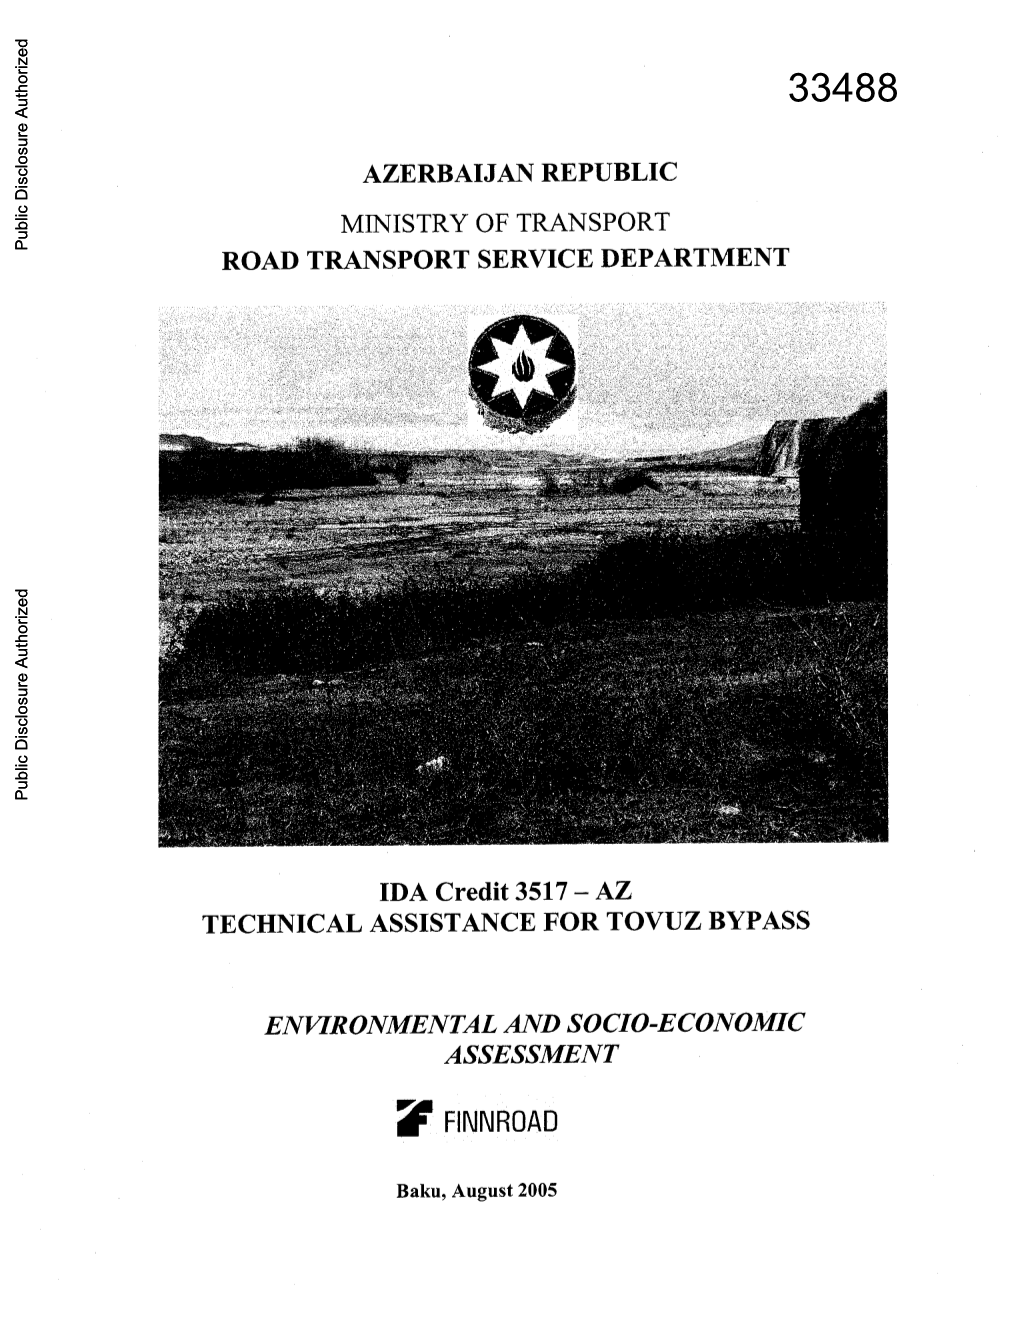 Az Technical Assistance for Tovuz Bypass